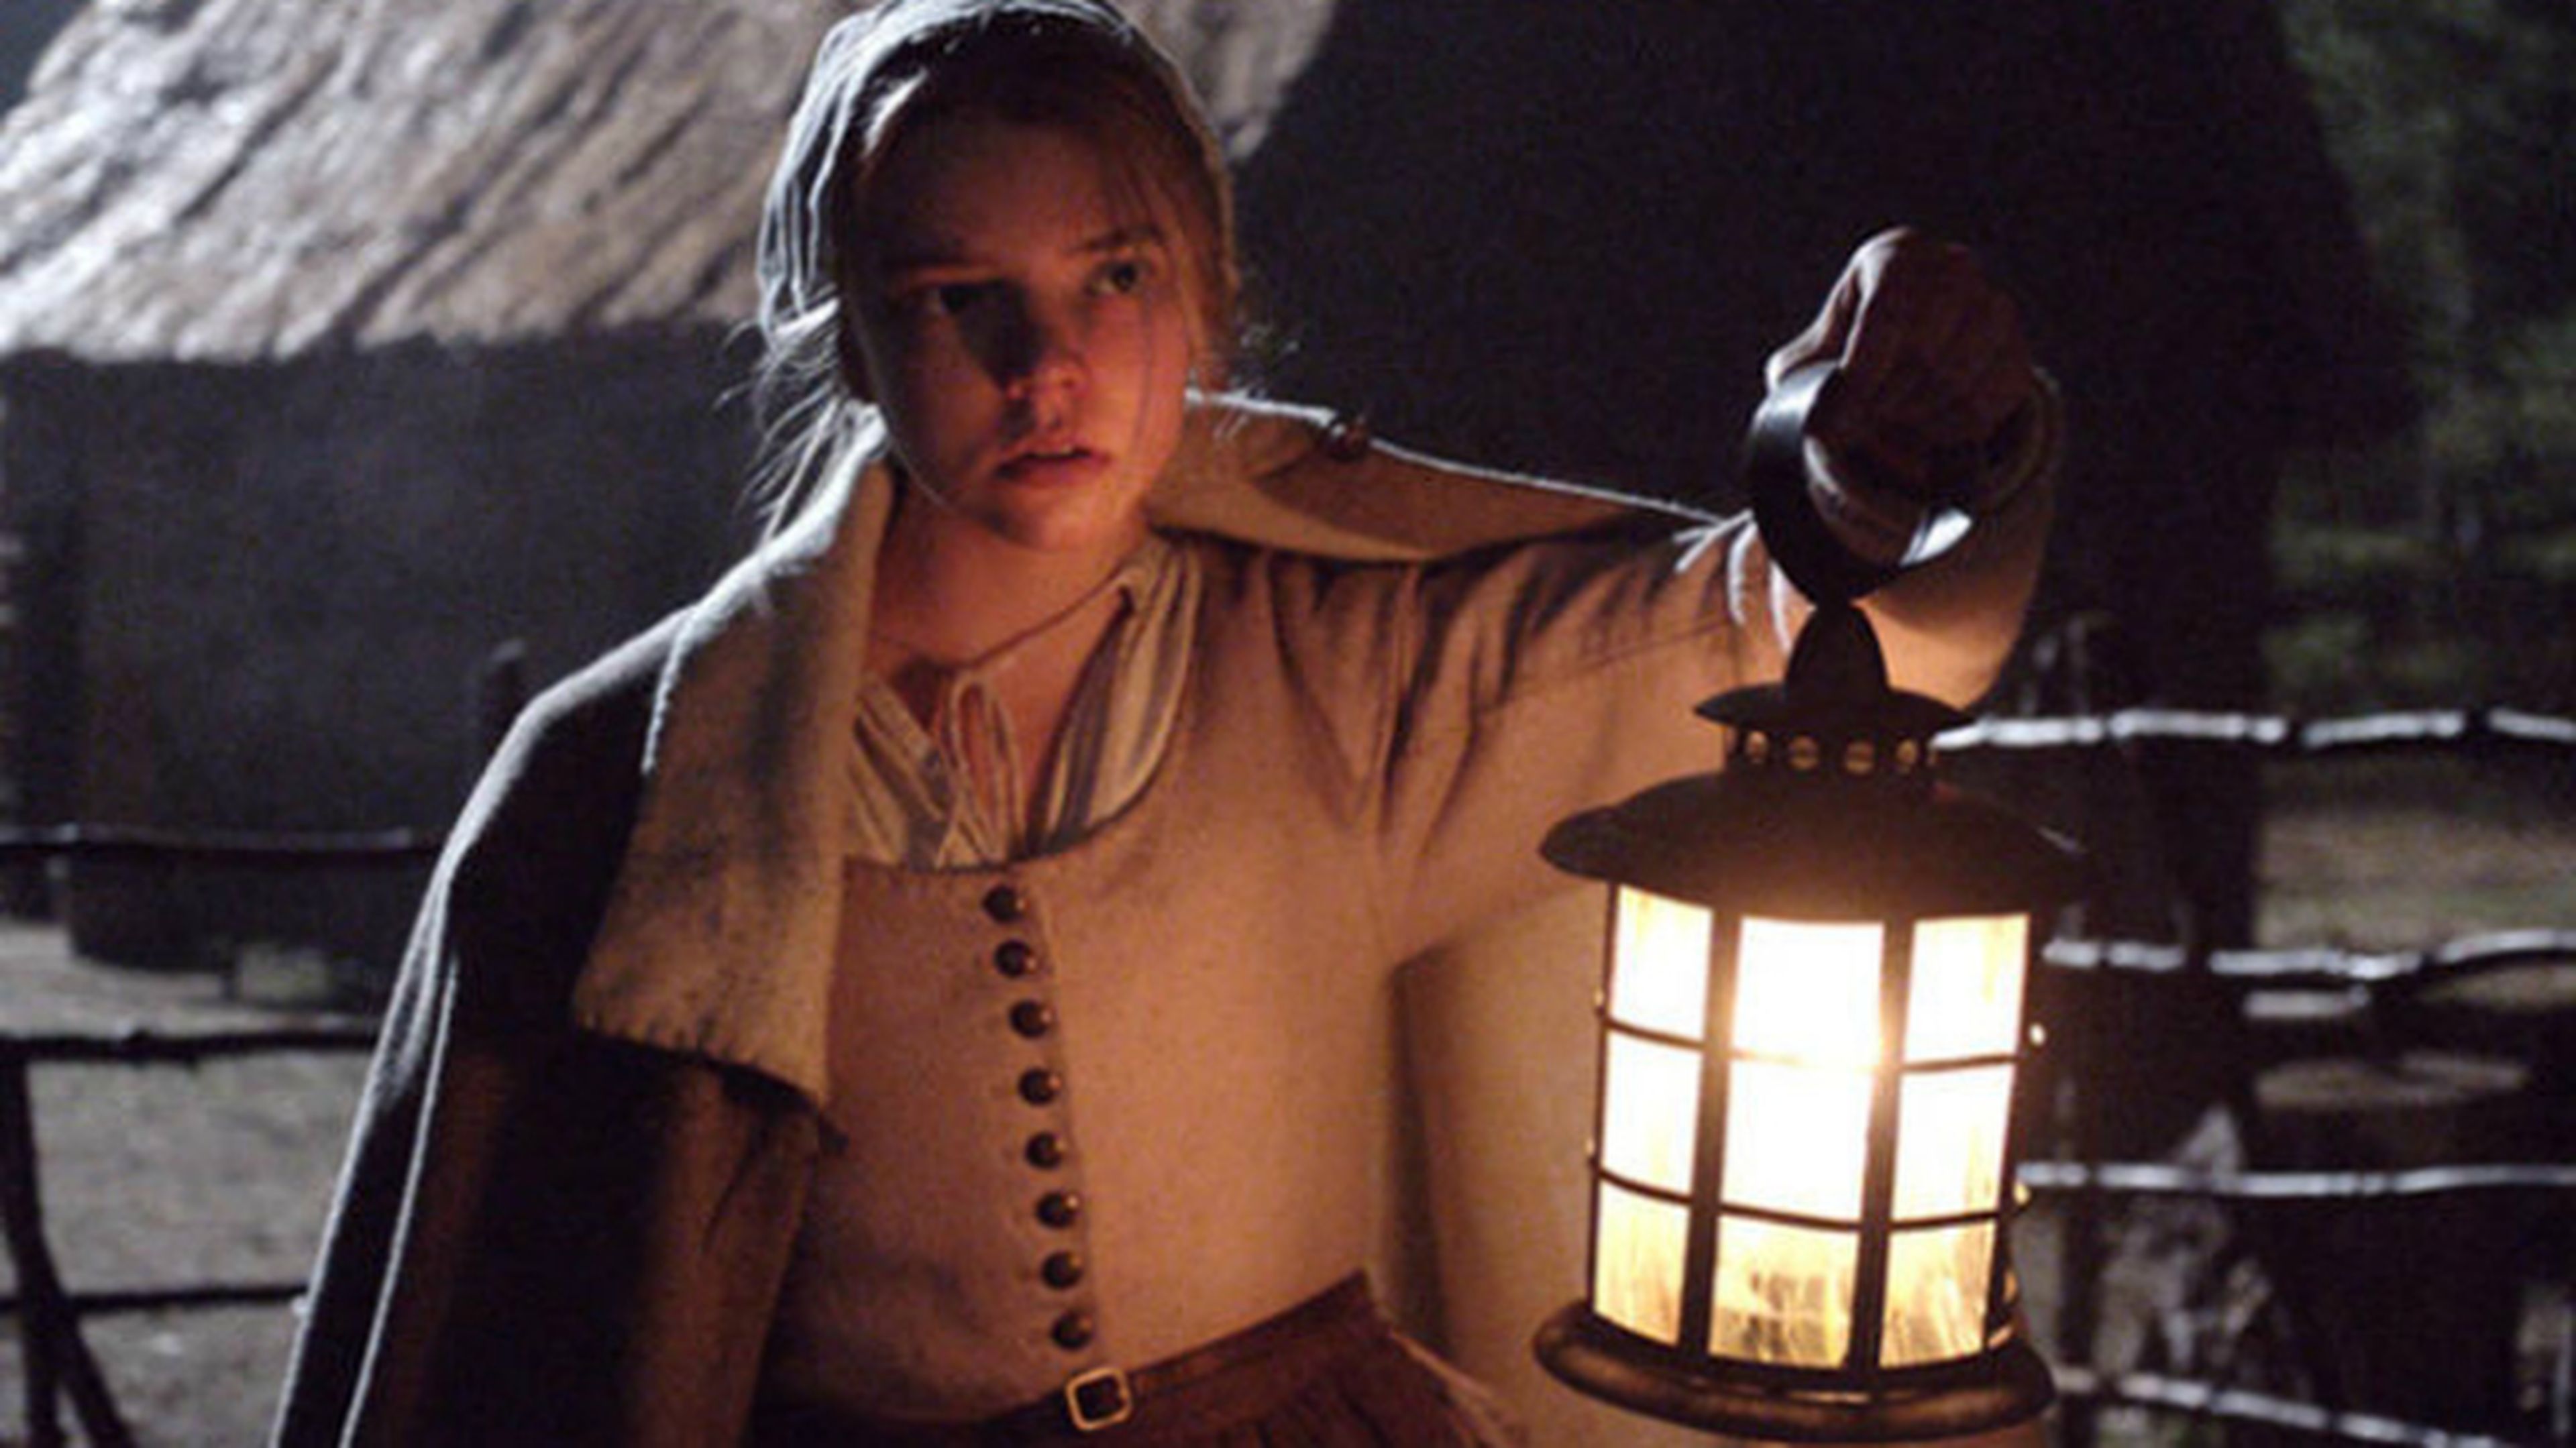 Tráiler de La bruja, la película que inaugurará el Festival de Sitges 2015